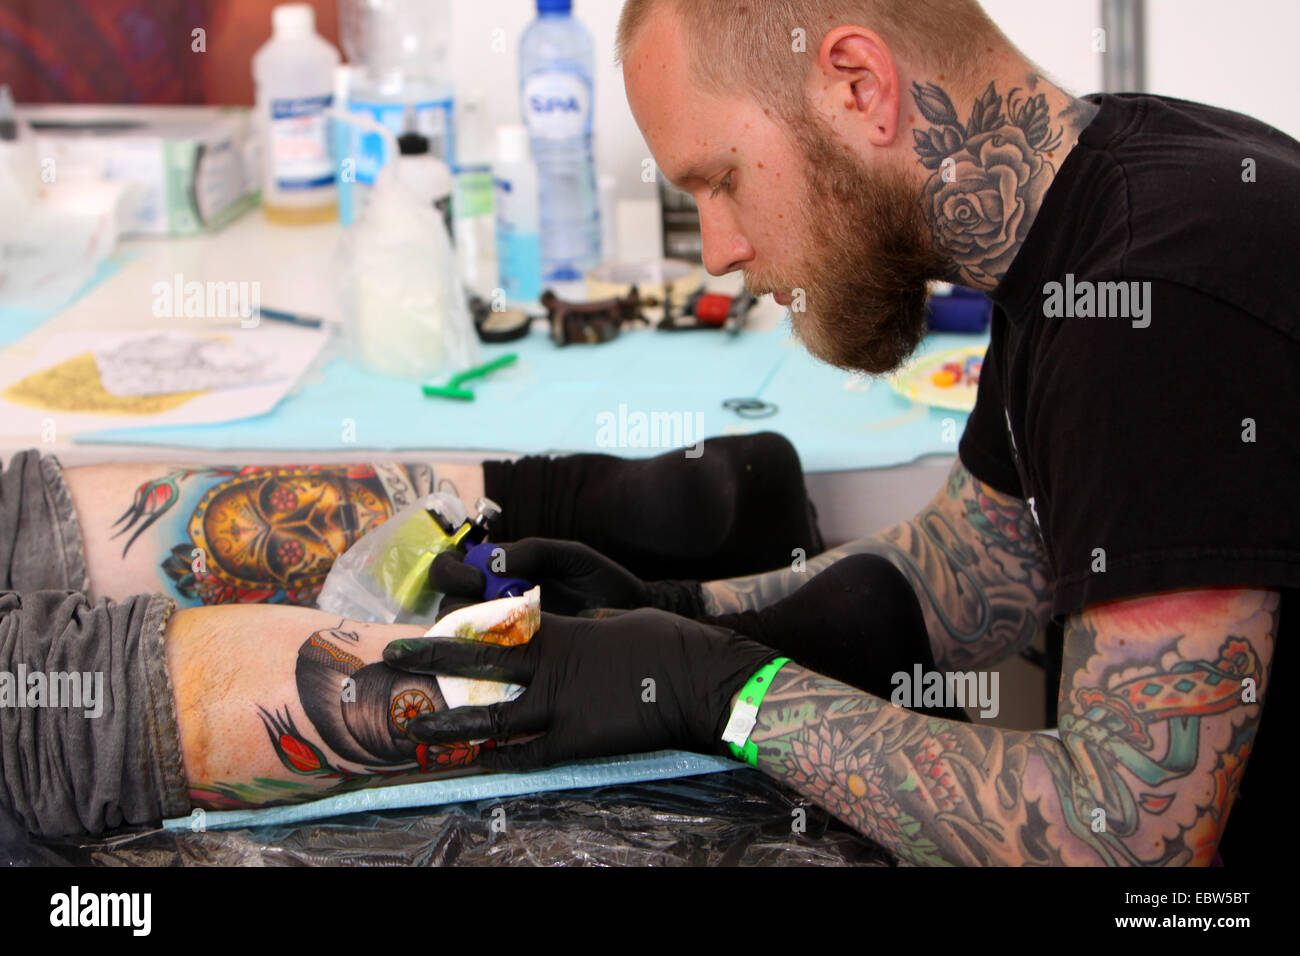 tattooer at work Stock Photo